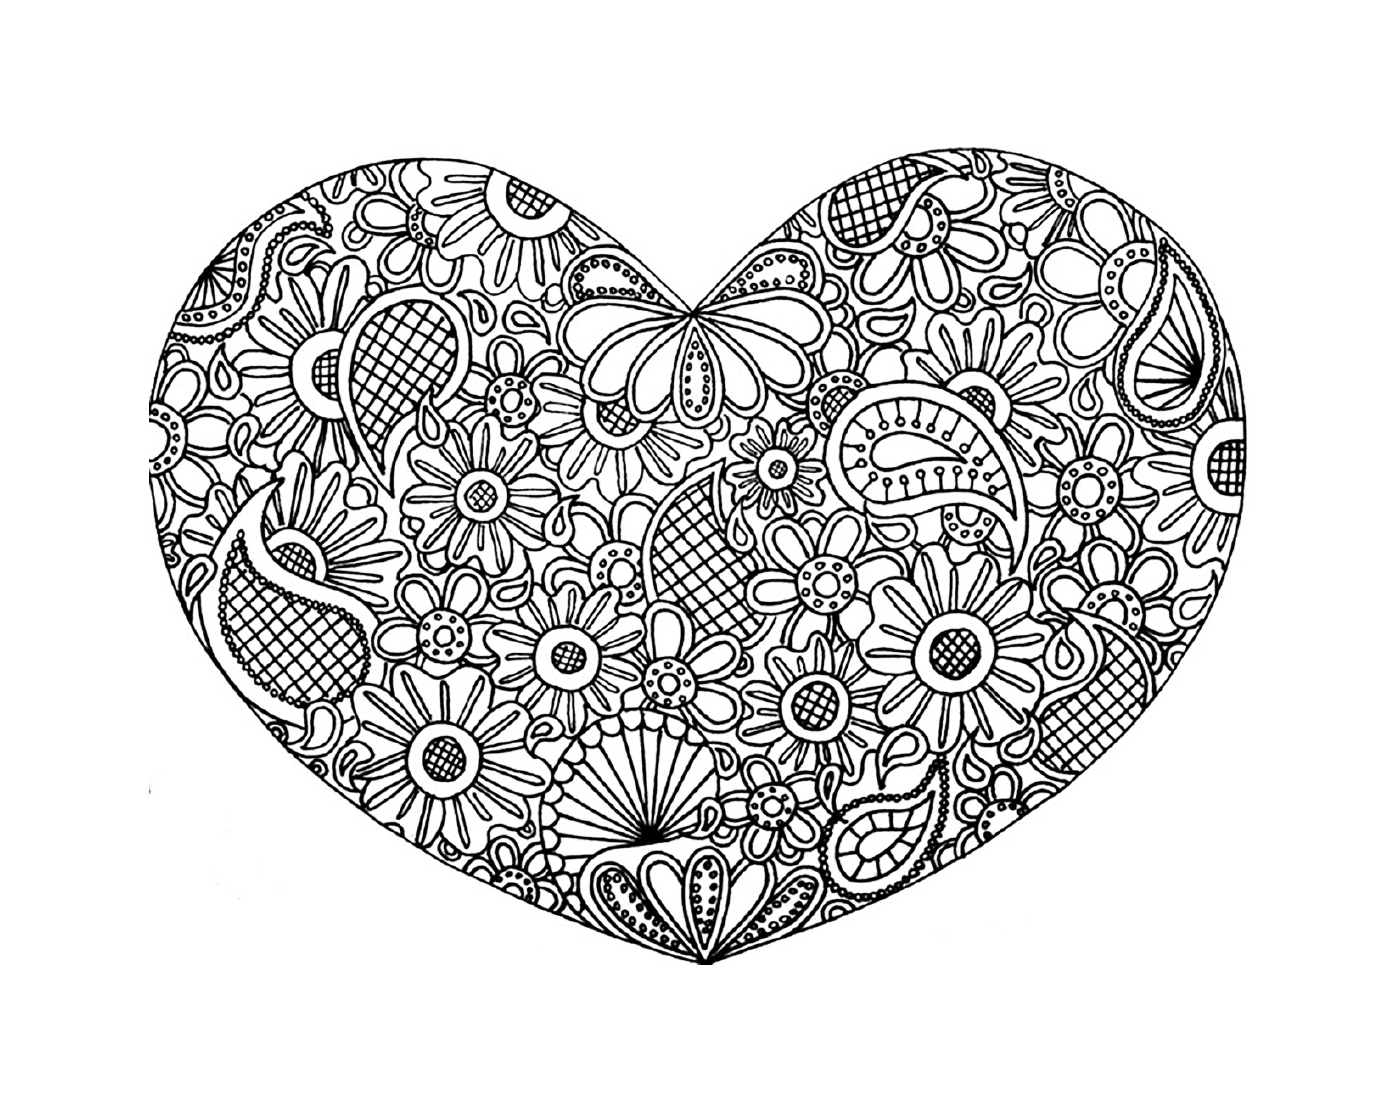   Un cœur complexe avec des doodles 